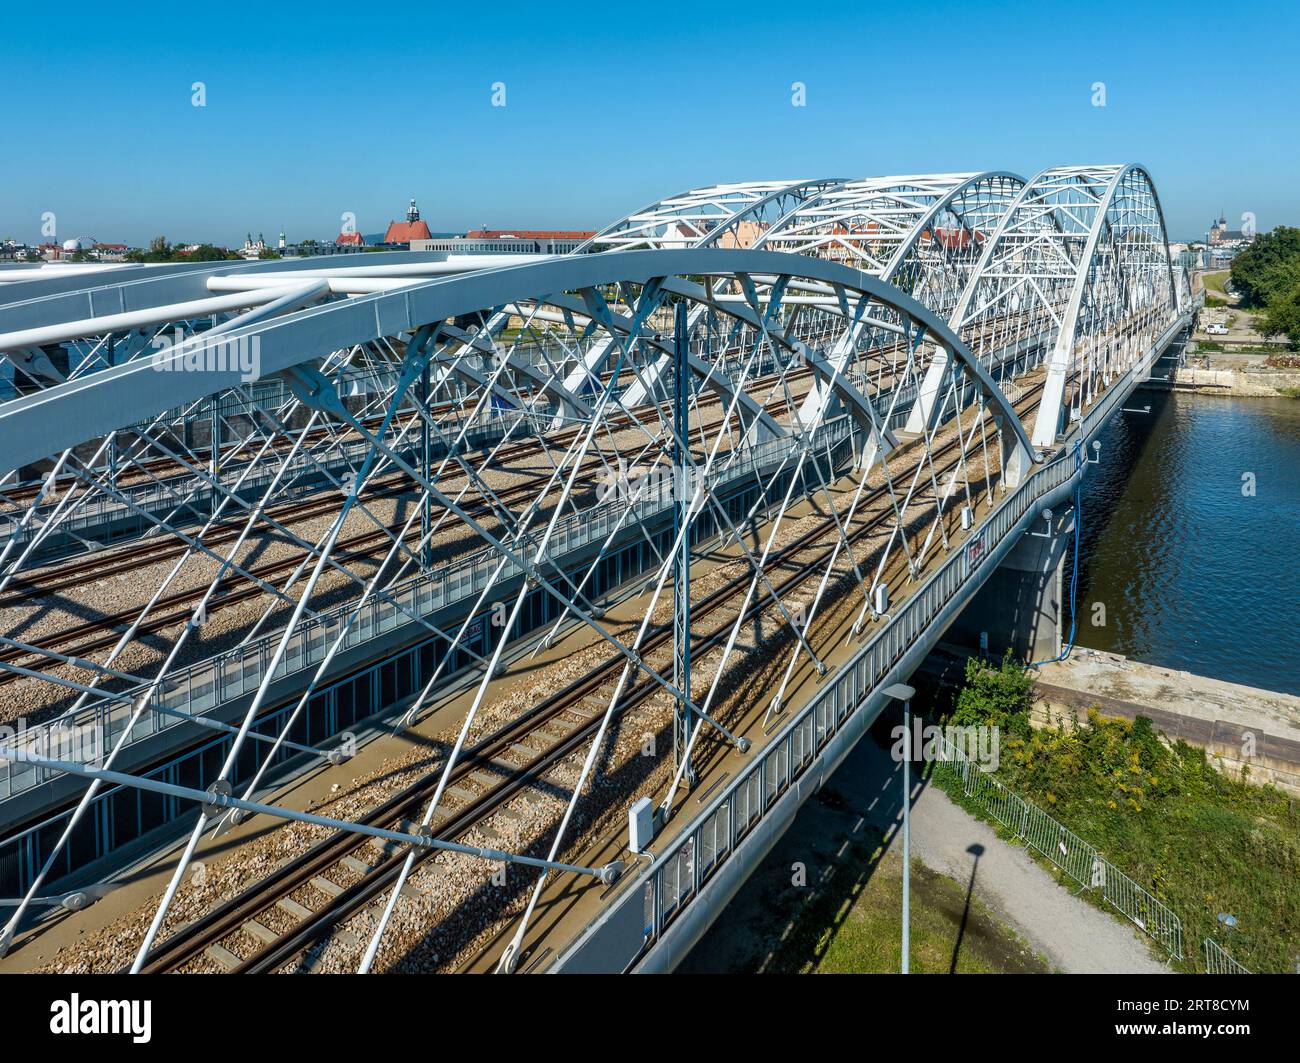 Dreifach gebundene Eisenbahnbrücke mit vier Gleisen über die Weichsel in Krakau, Polen. Altstadt im Hintergrund. Drohnenansicht aus der Luft. Stockfoto